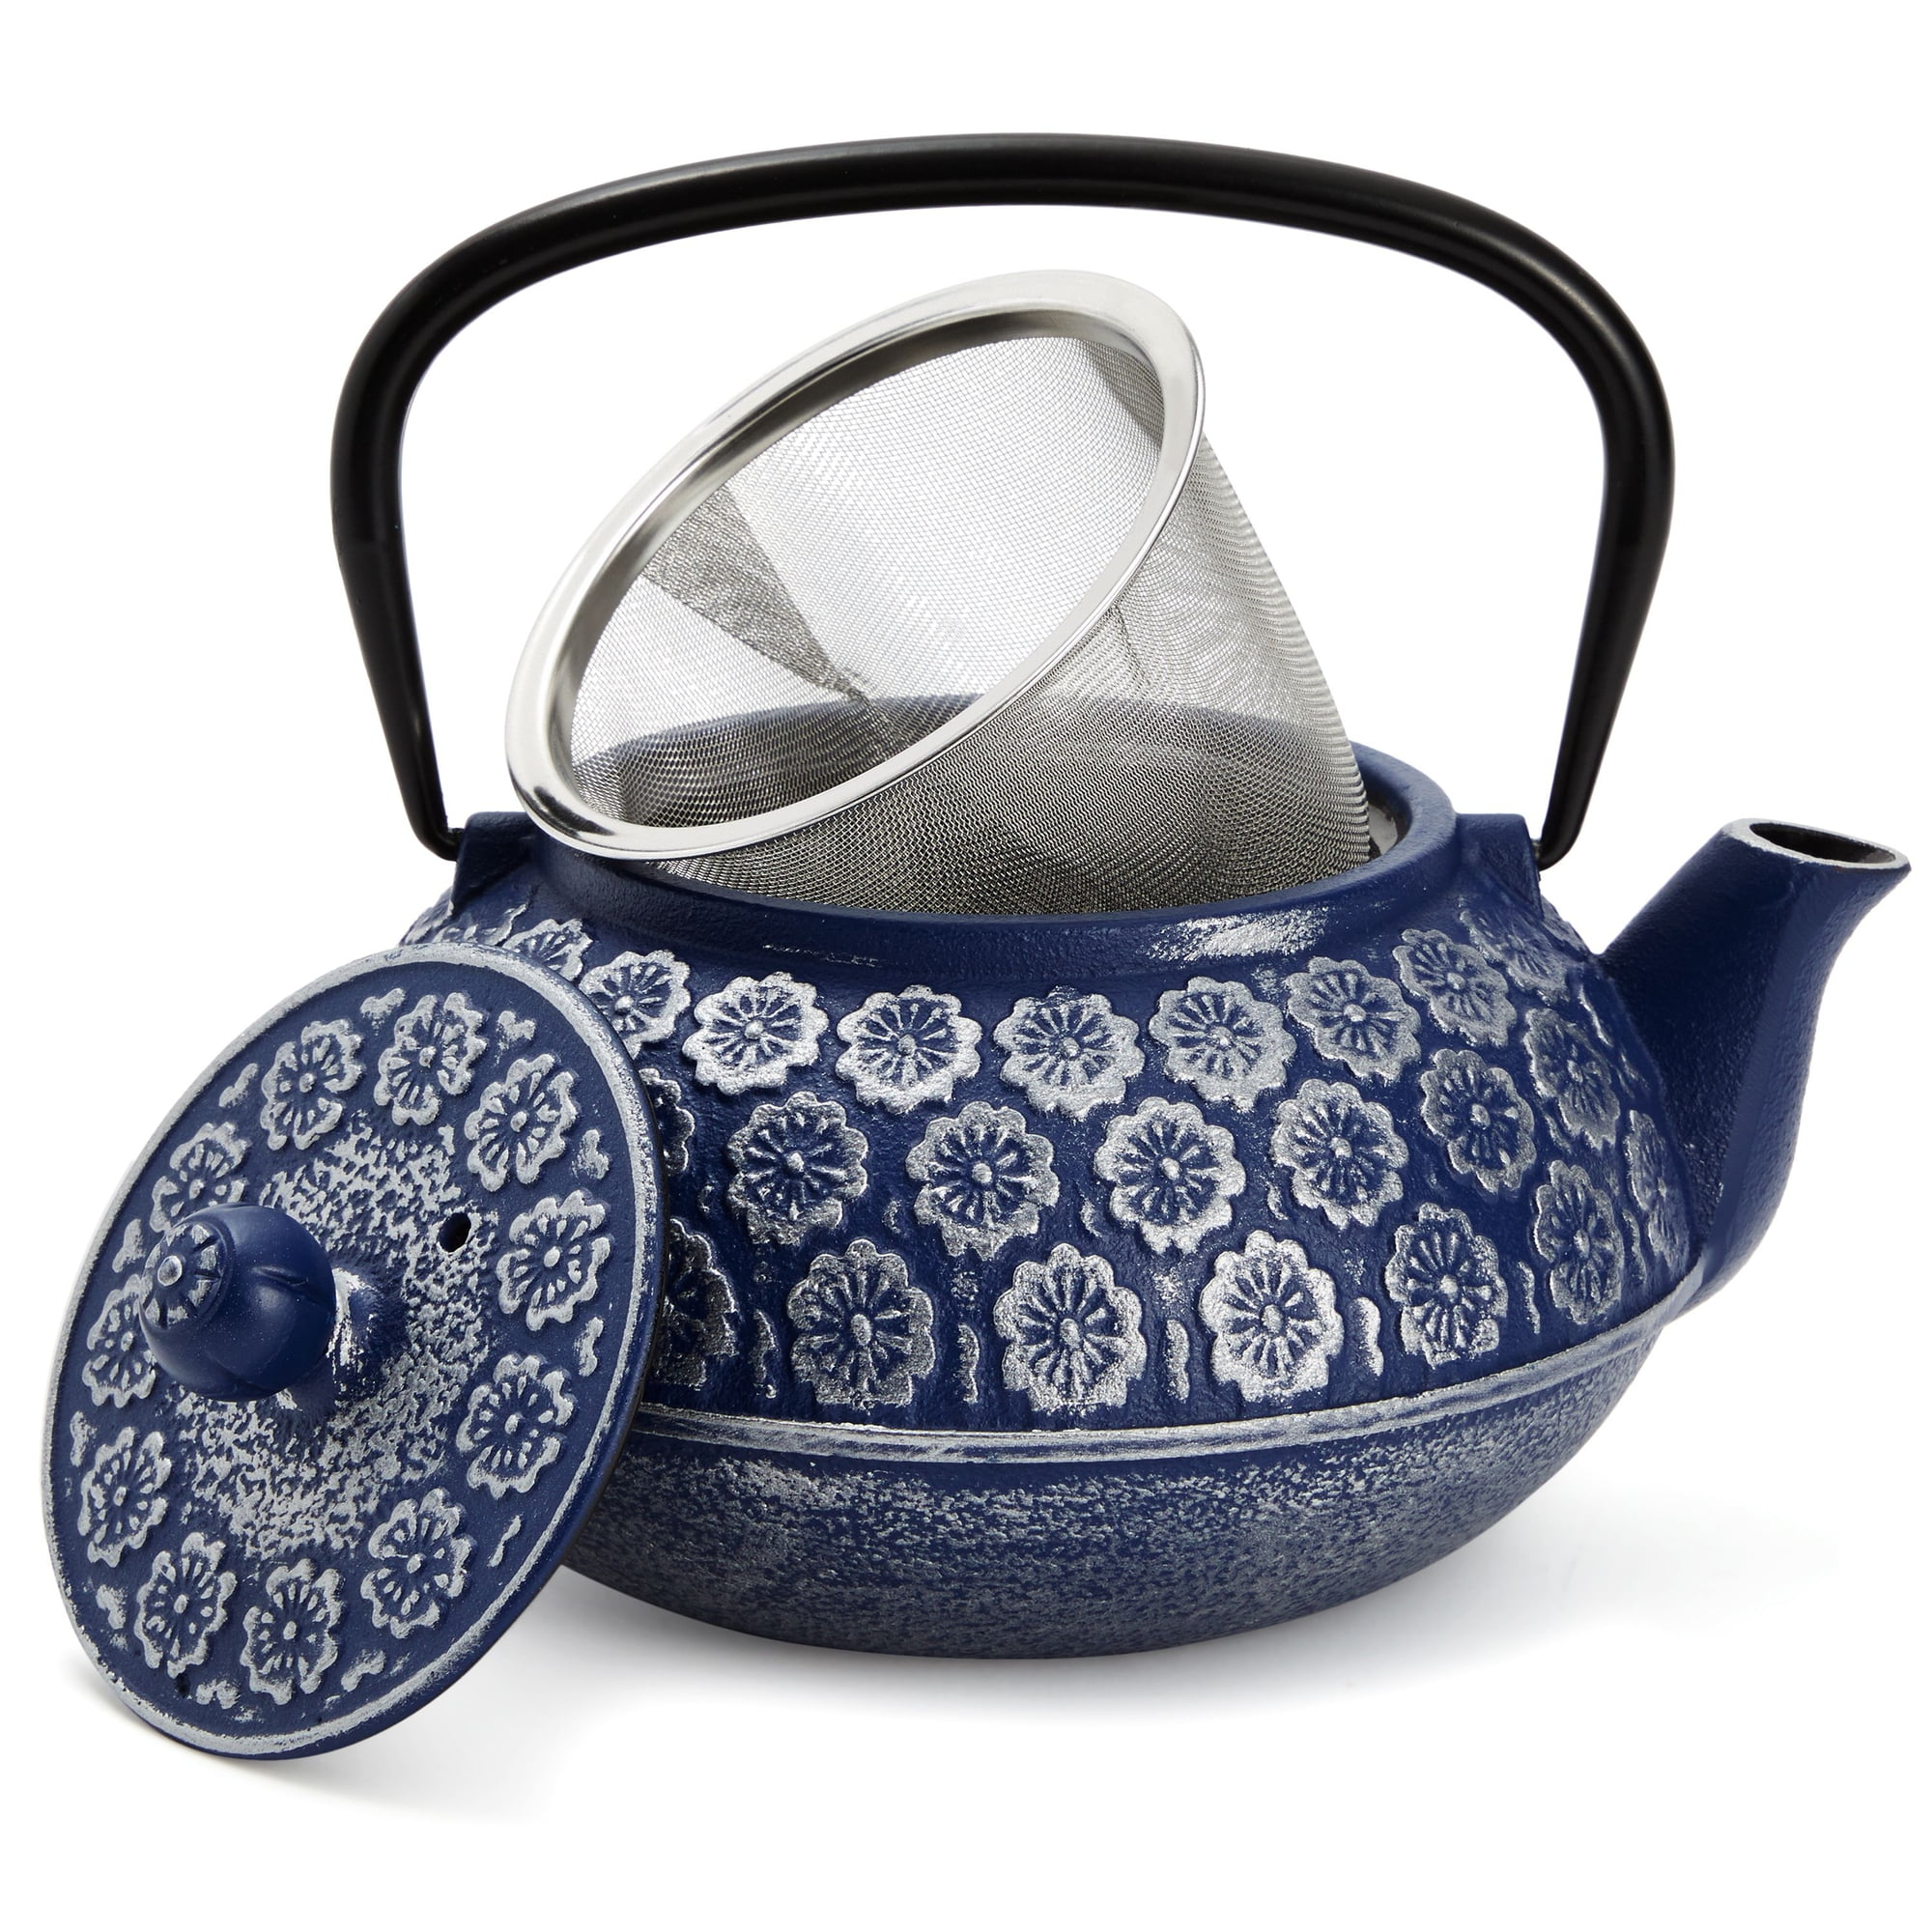 Qualita King Mini White Enamel Teapot Team İs A Teapot